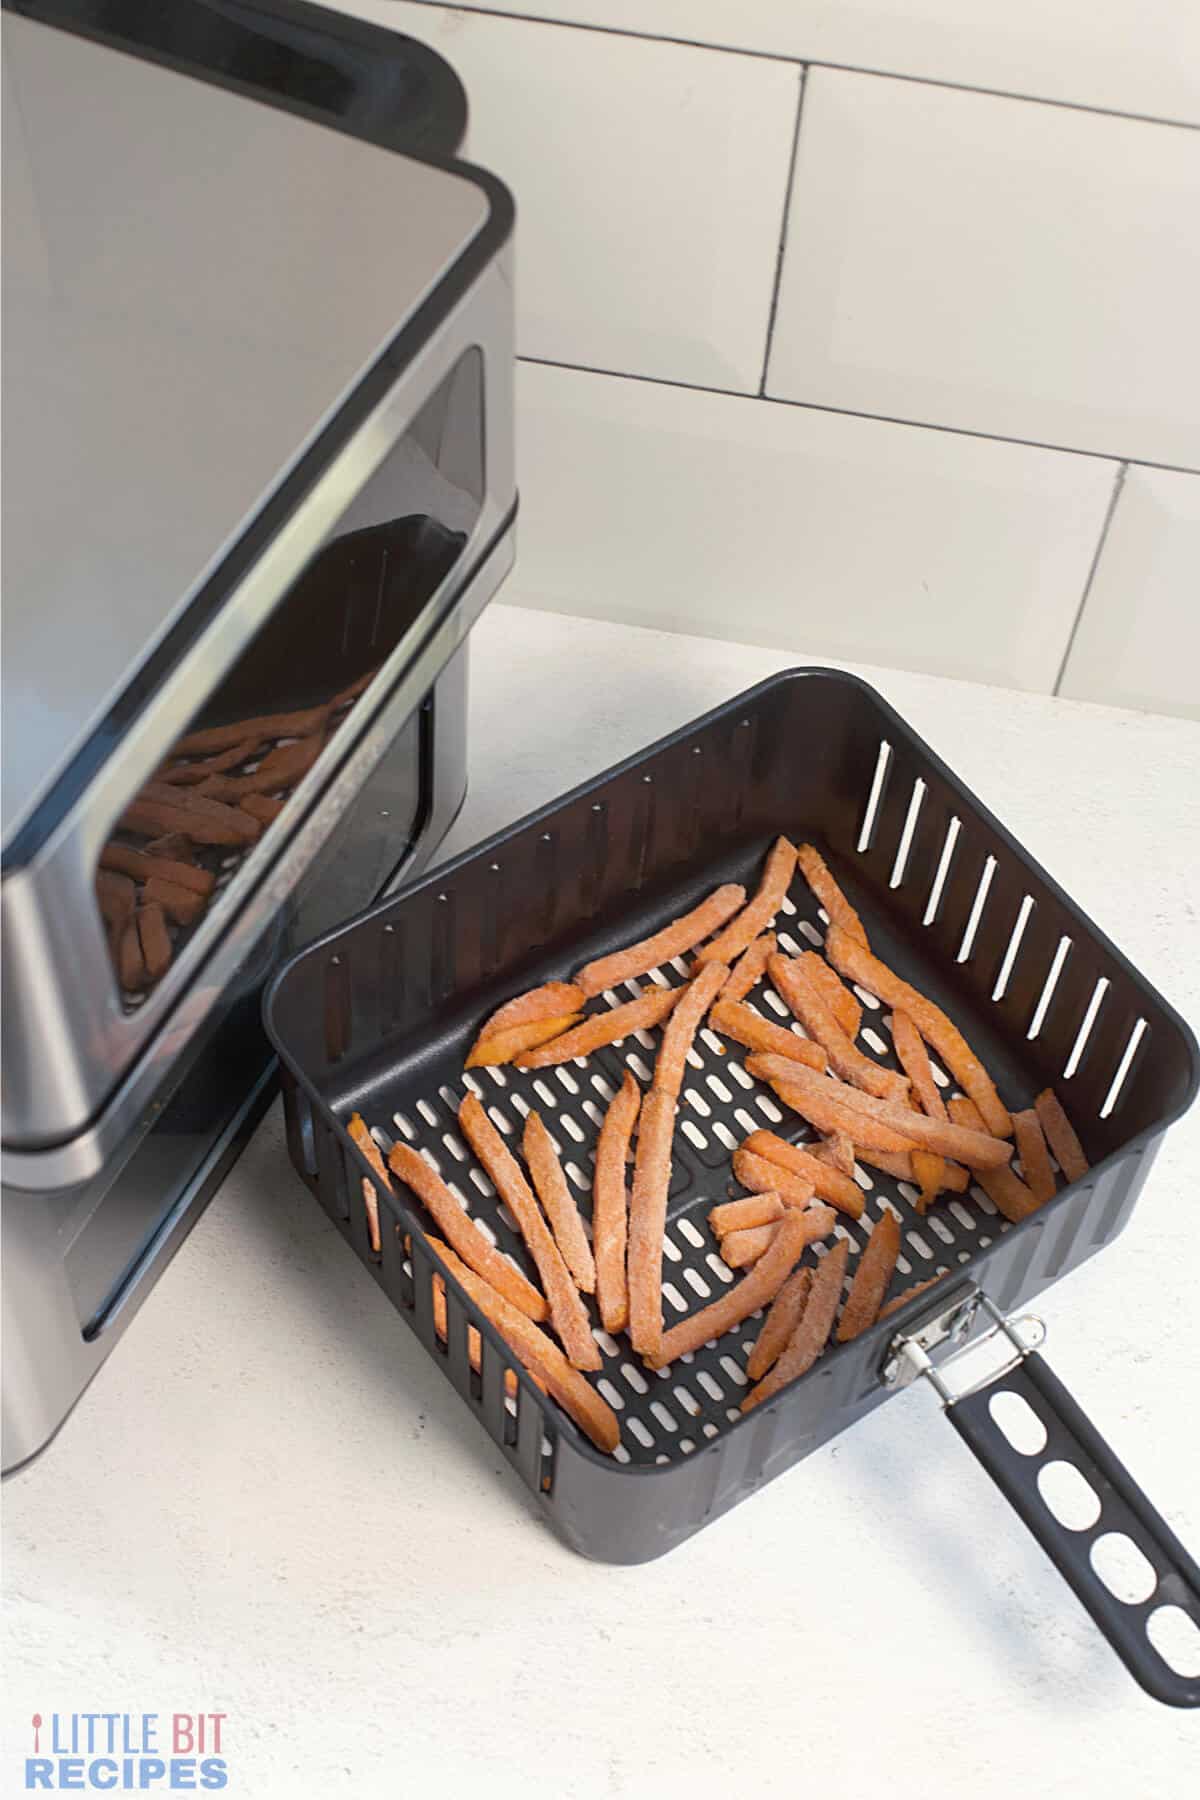 frozen sweet potatoes in air fryer basket.